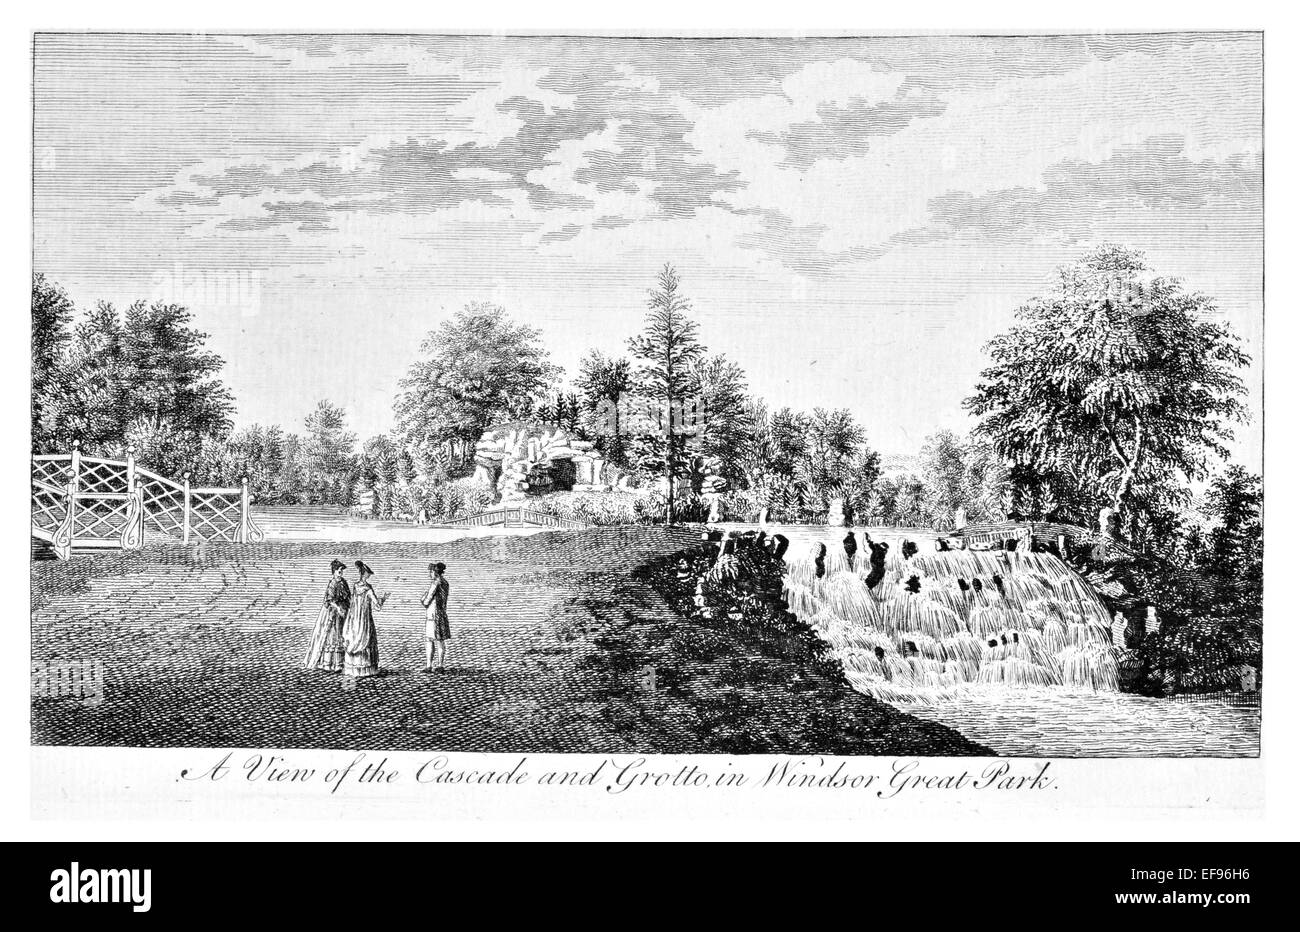 Grabado en cobre de 1776 bellezas paisajísticas más elegantes de Inglaterra magníficos edificios públicos.Windsor Great Park gruta en cascada Foto de stock